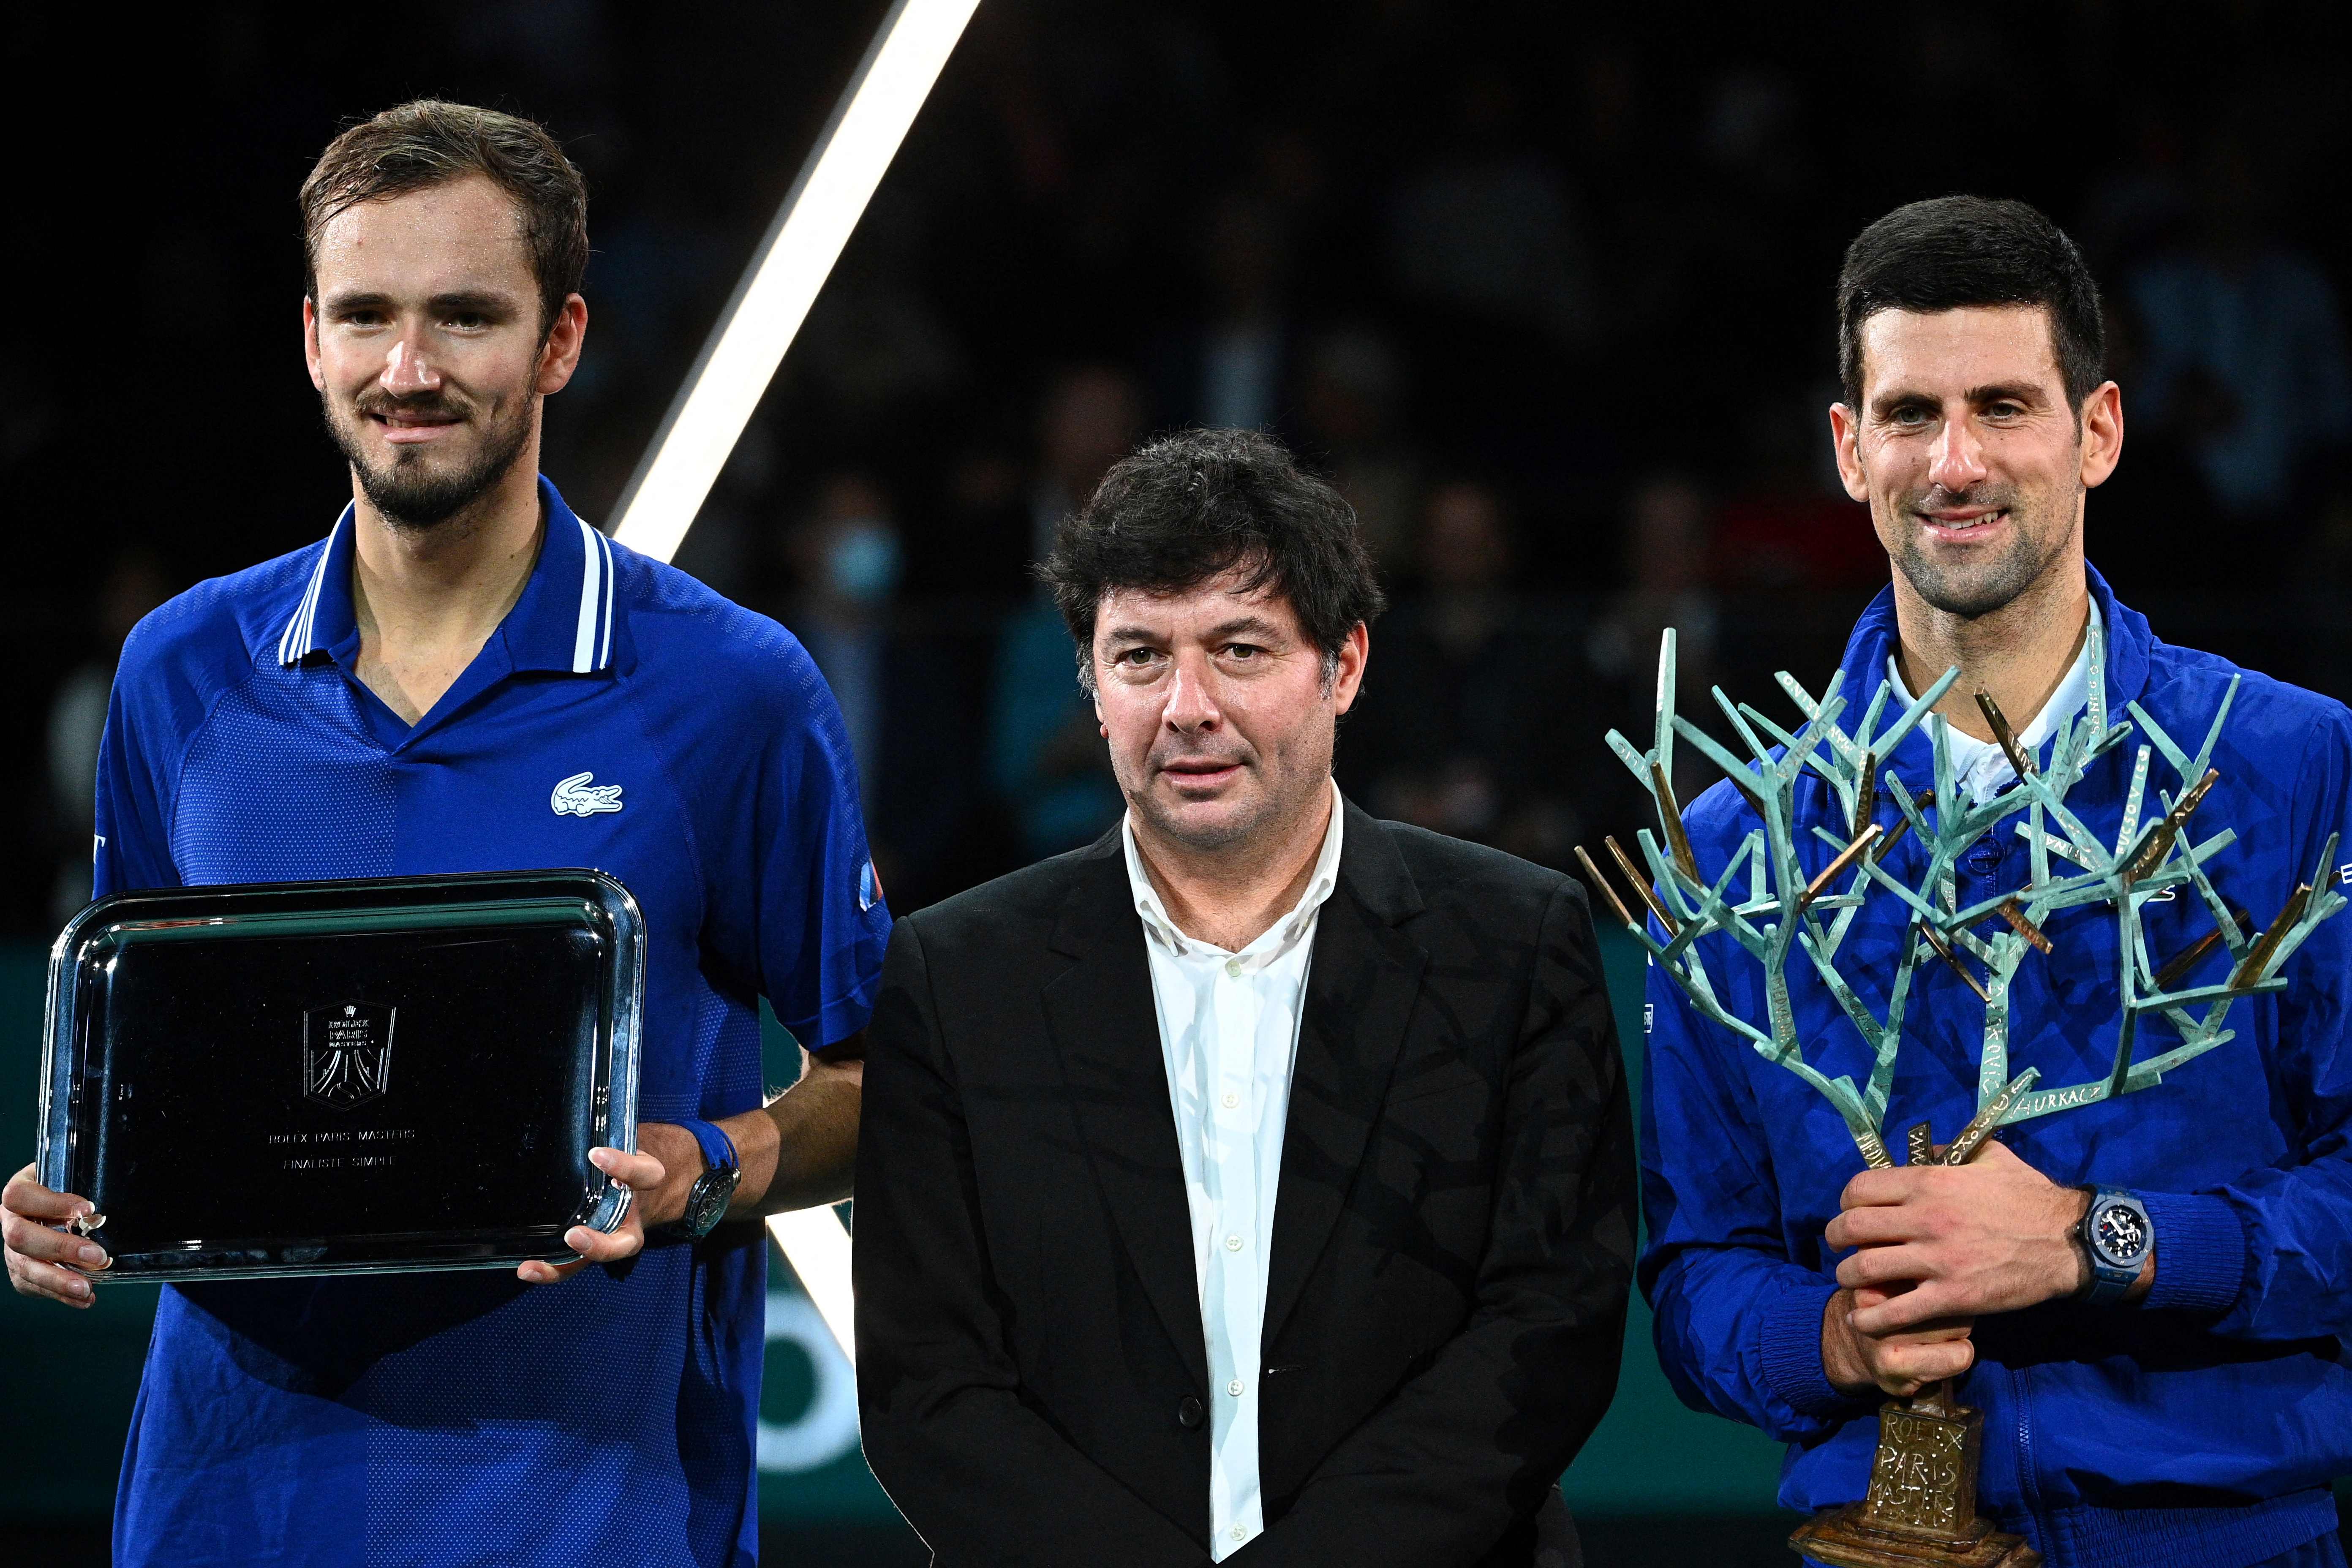 El serbio Novak Djokovic (D) posa con el trofeo de campeón junto al francés Sebastien Grosjean (C) y el ruso Daniil Medvedev (I) después de ganar la final del ATP Paris Masters en el AccorHotels Arena de París. (Foto Prensa Libre: AFP)